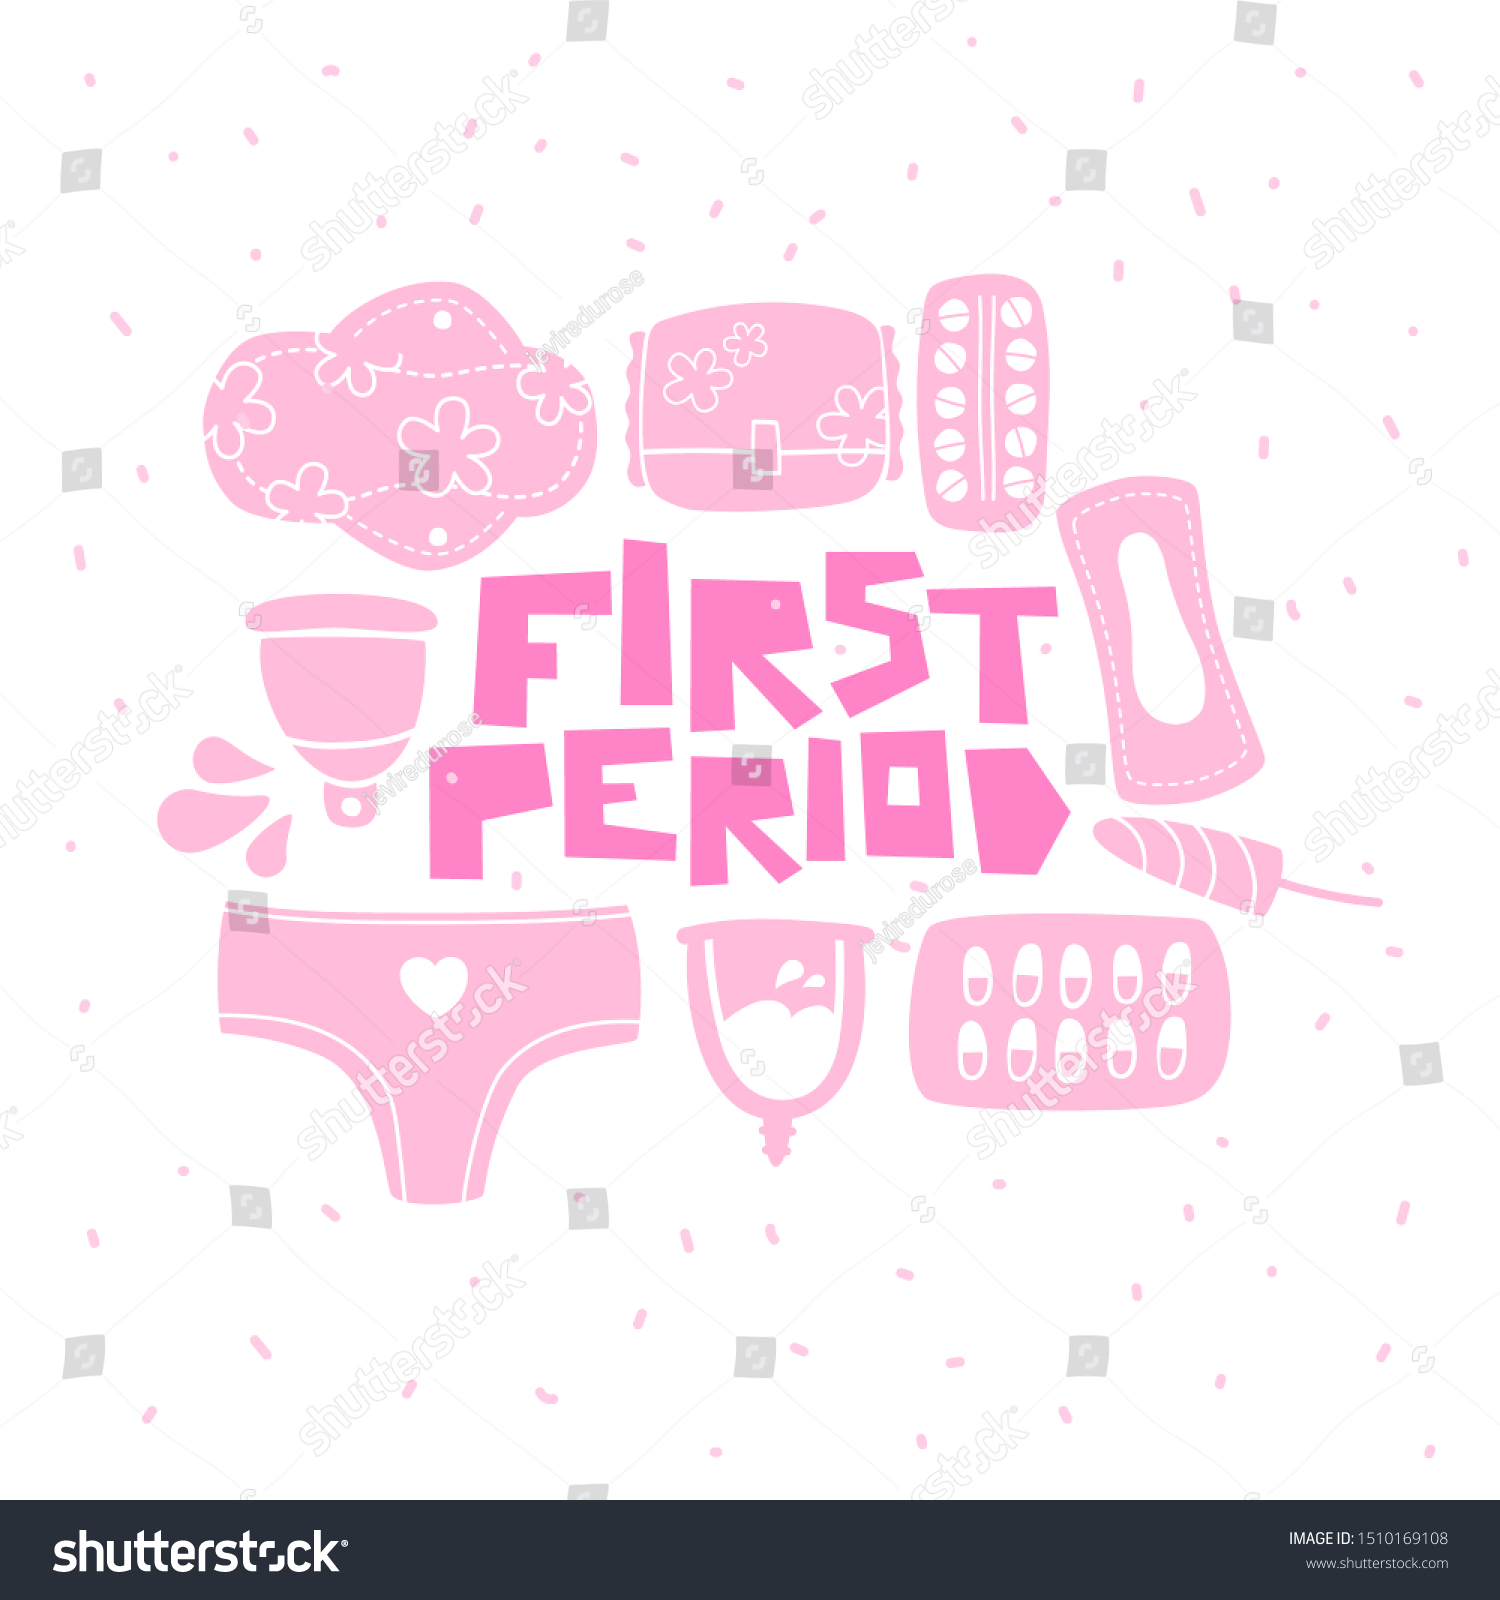 Menstruation Vector Illustration Hand Drawn Lettering 스톡 벡터로열티 프리 1510169108 Shutterstock 1386